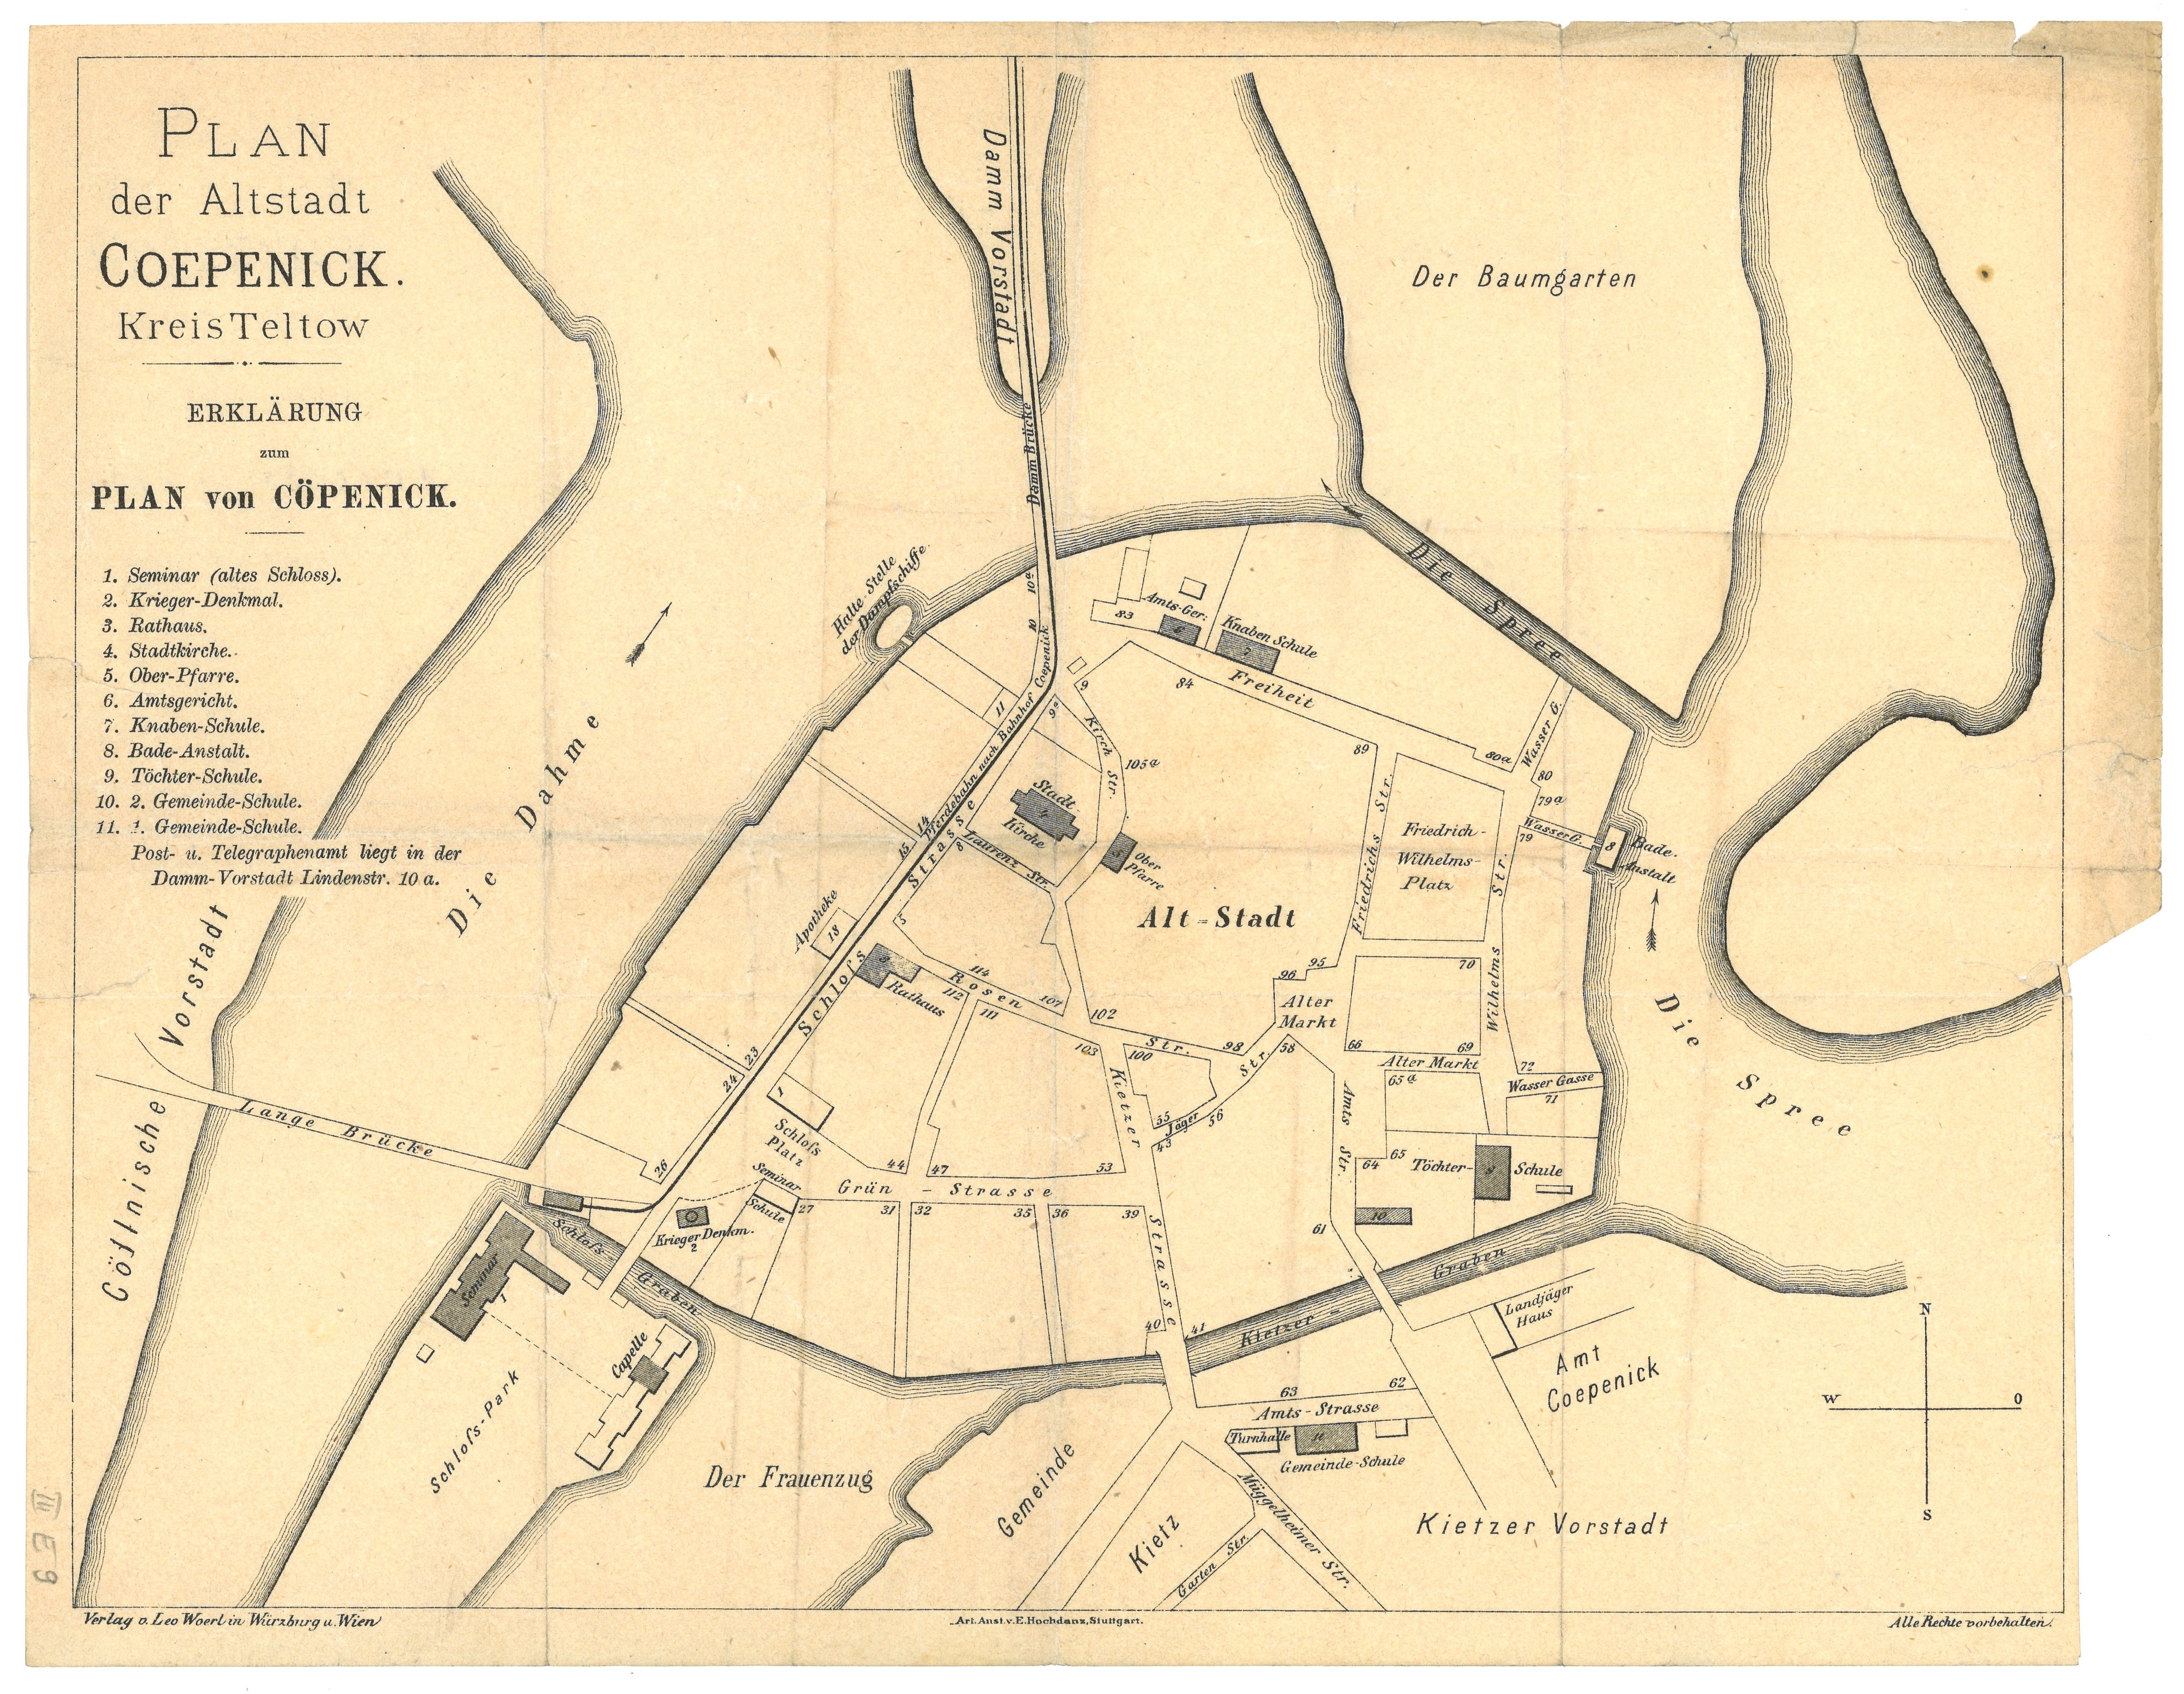 Plan der Altstadt Coepenick [Köpenick] ca. 1910 (Landesgeschichtliche Vereinigung für die Mark Brandenburg e.V. CC BY)